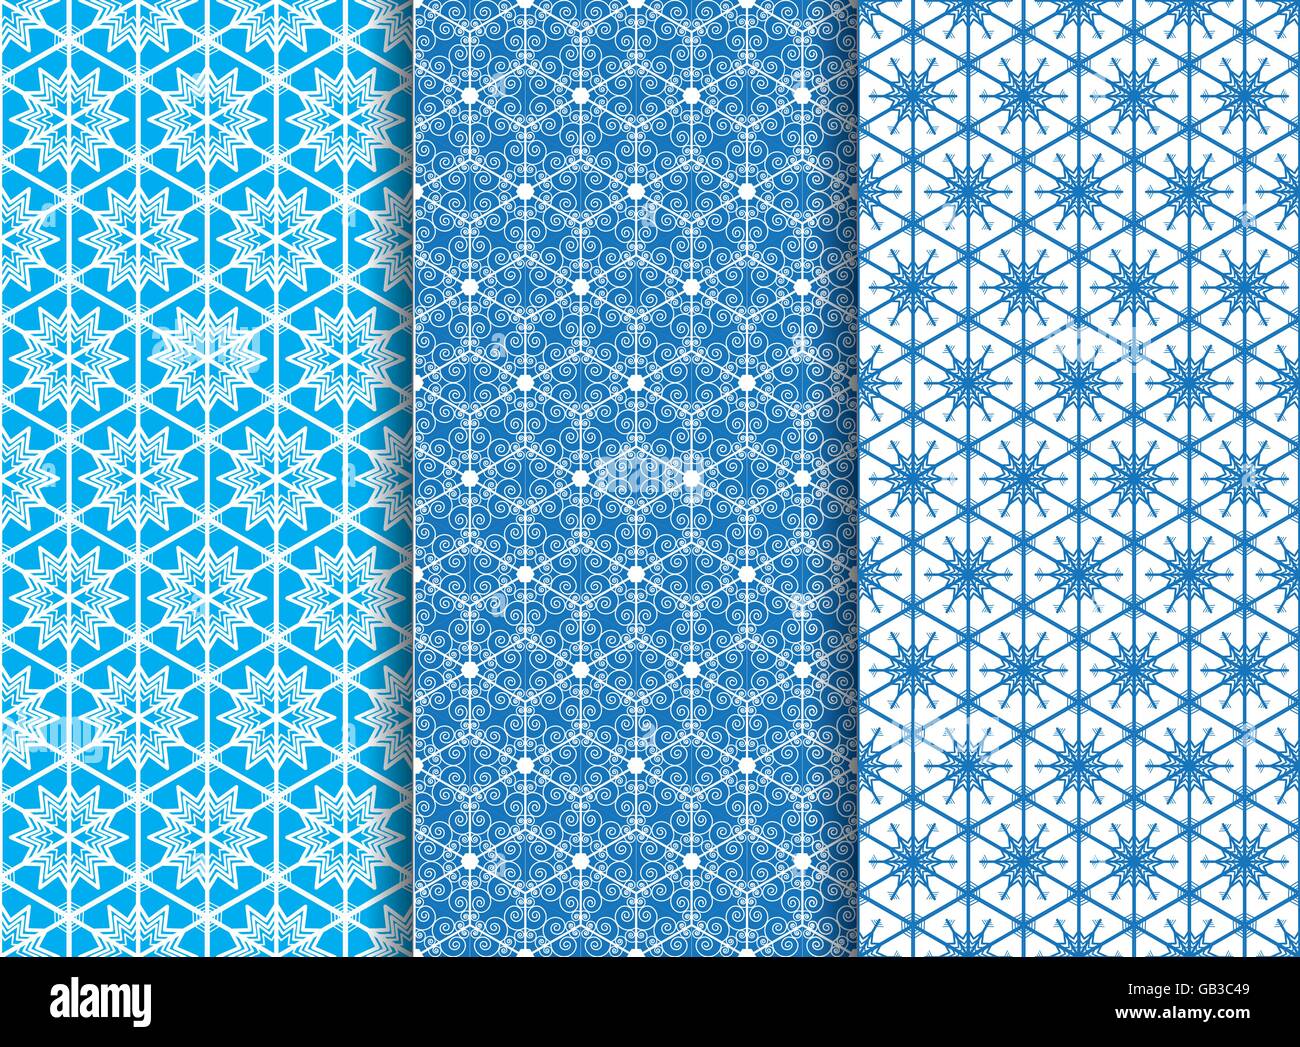 Drei Winter Schneeflocke sechseckigen geometrische Musterdesign Grafikdesign für Hintergrund Stock Vektor